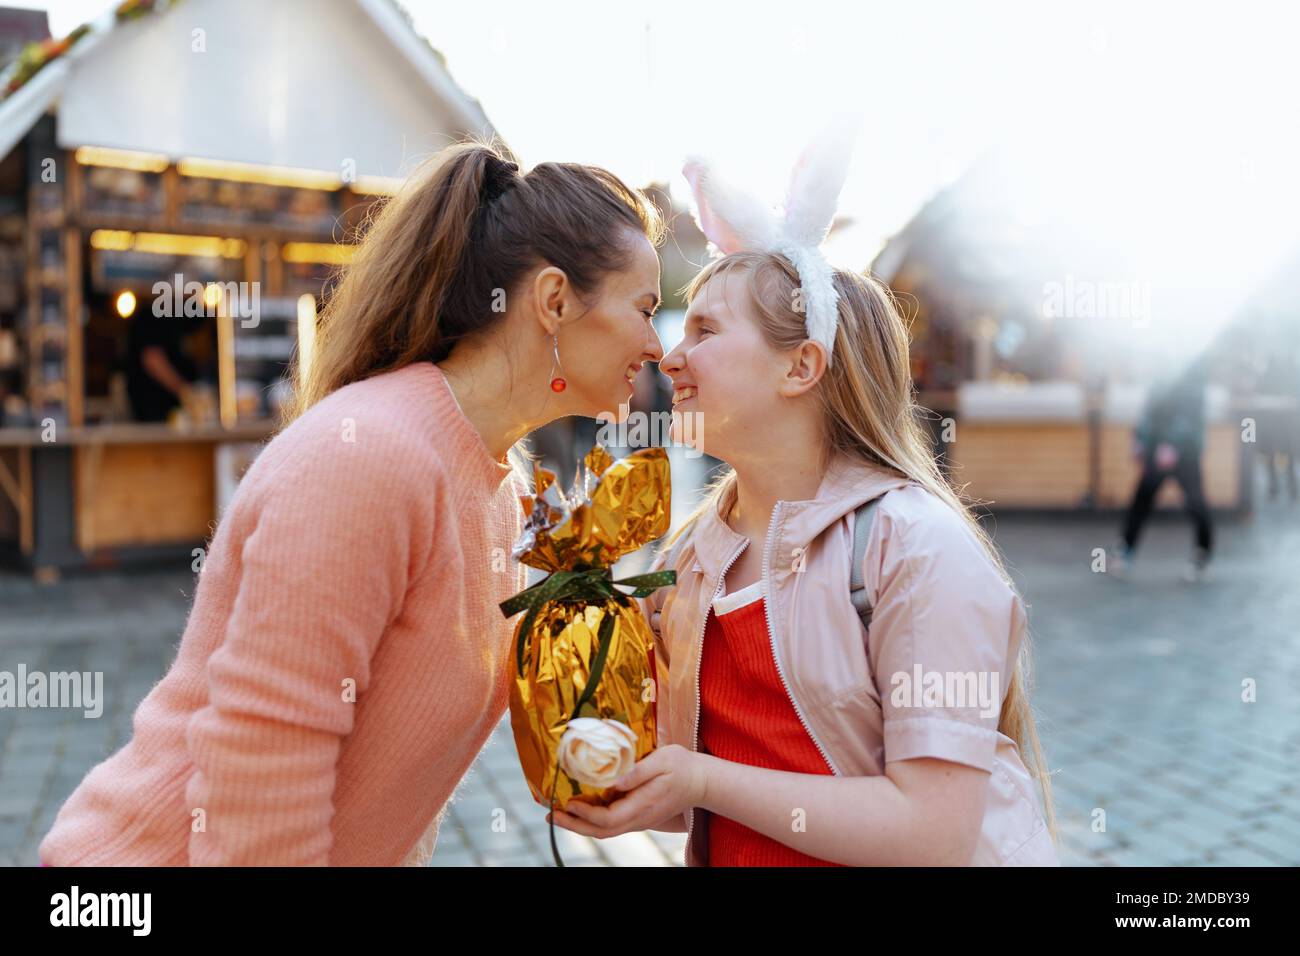 Osterspaß. Lächelnde moderne Mutter und Kind mit goldenem osterei auf dem Jahrmarkt in der Stadt. Stockfoto